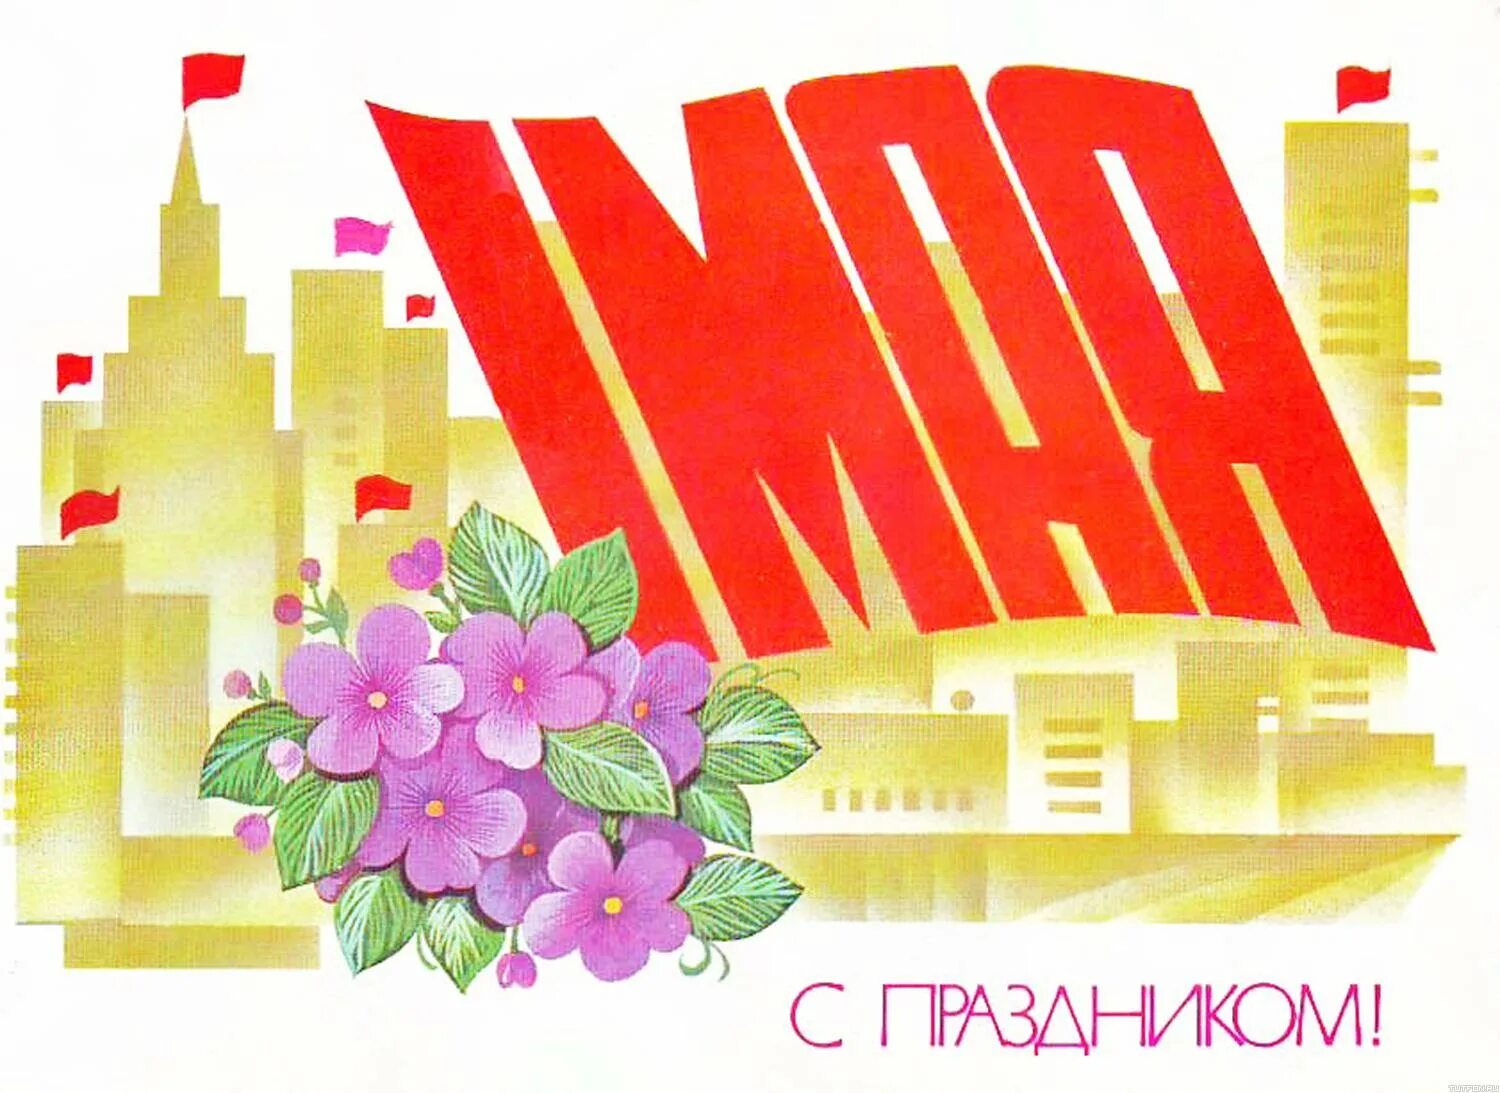 Советские праздники 1 мая. Открытки с 1 мая. Советские открытки с 1 мая. 1 Мая праздник плакат. Мир труд май открытка.